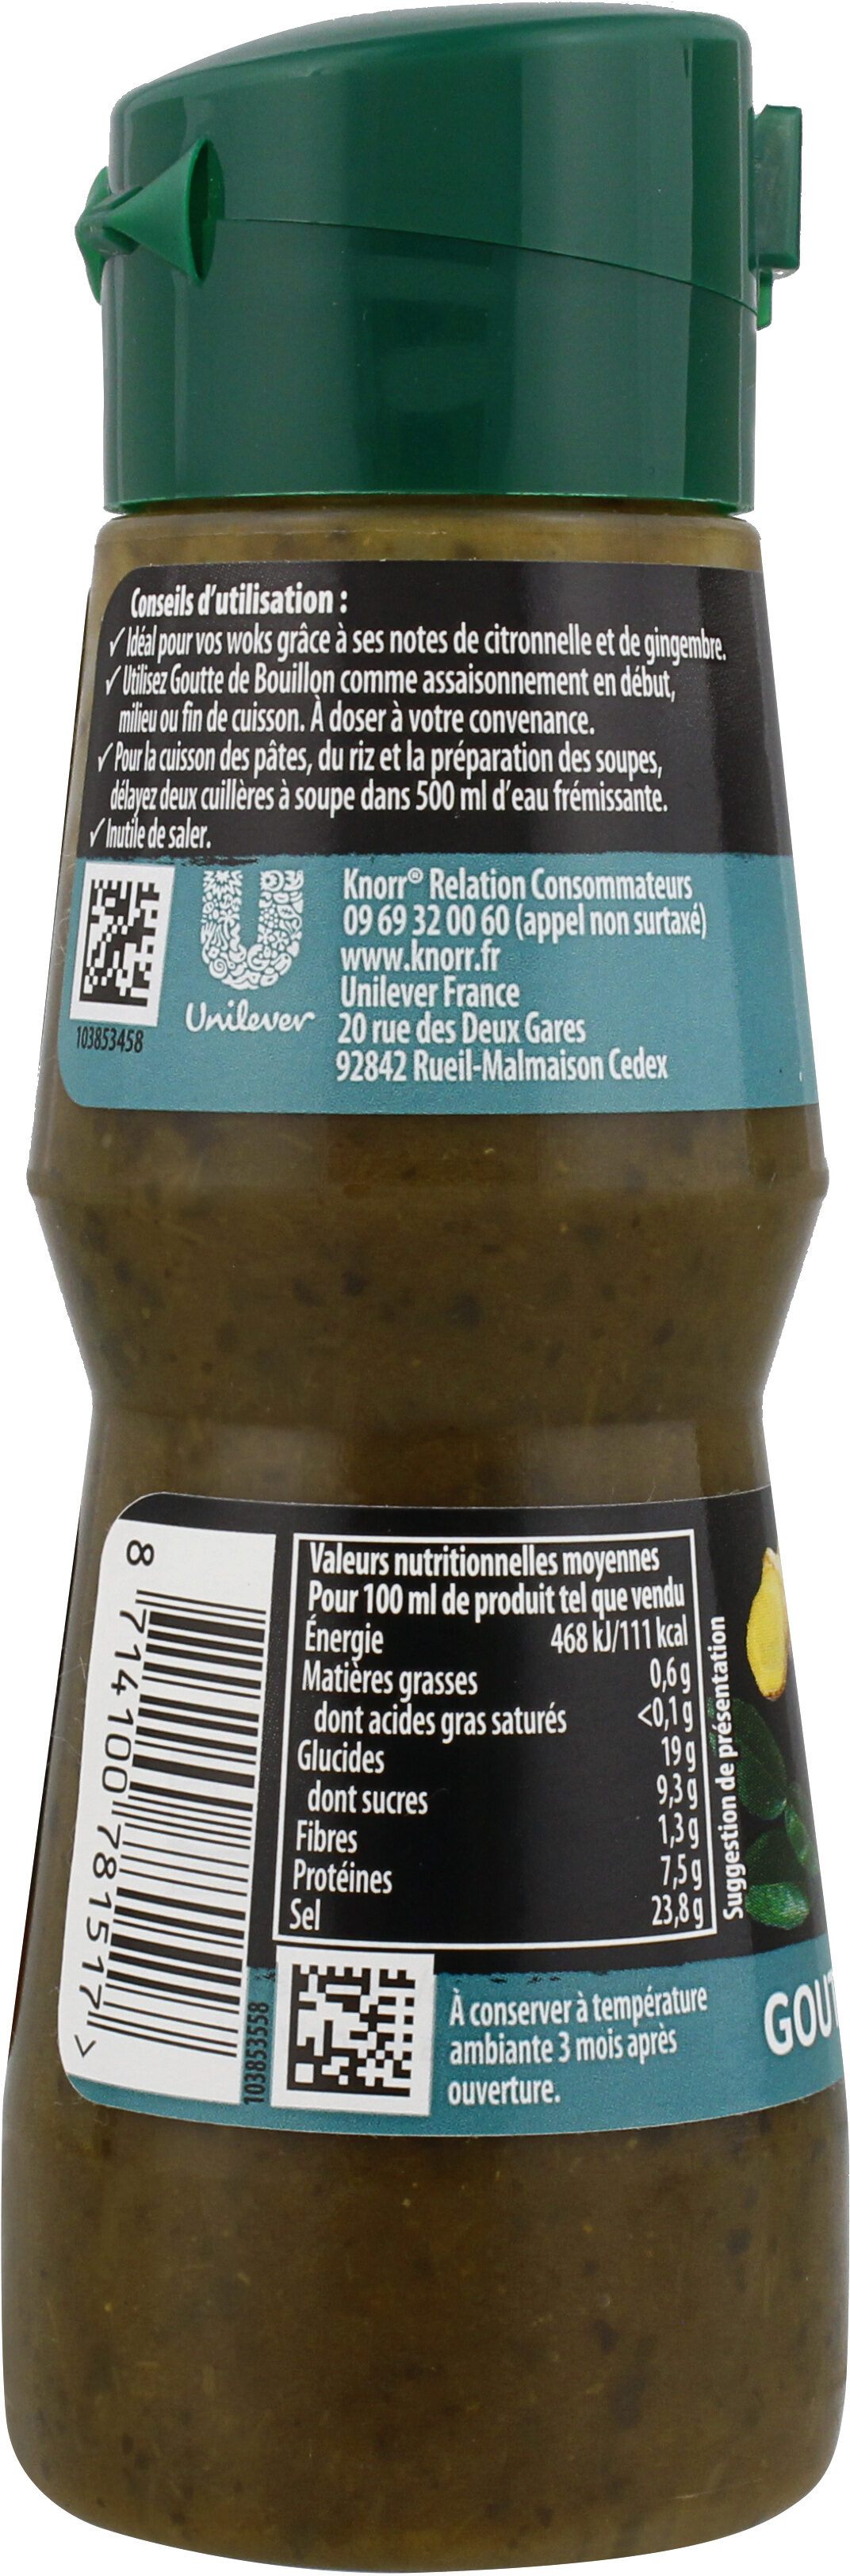 Knorr Goutte de Bouillon Assaisonnement Liquide Saveur Thaï 150 ml - Nutrition facts - fr